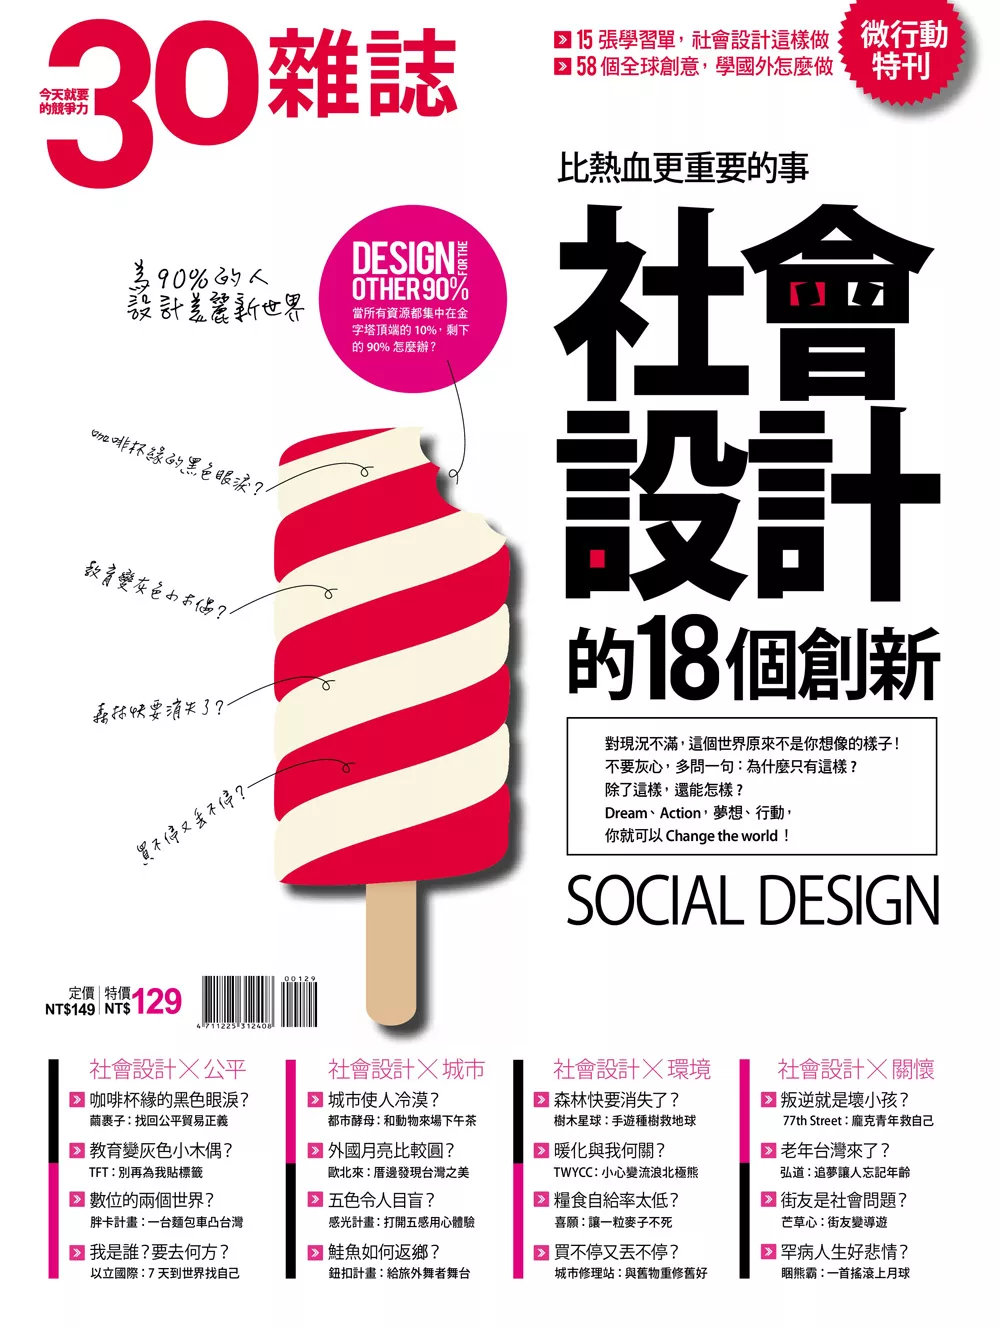 30雜誌 社會設計的18個創新 (電子雜誌)